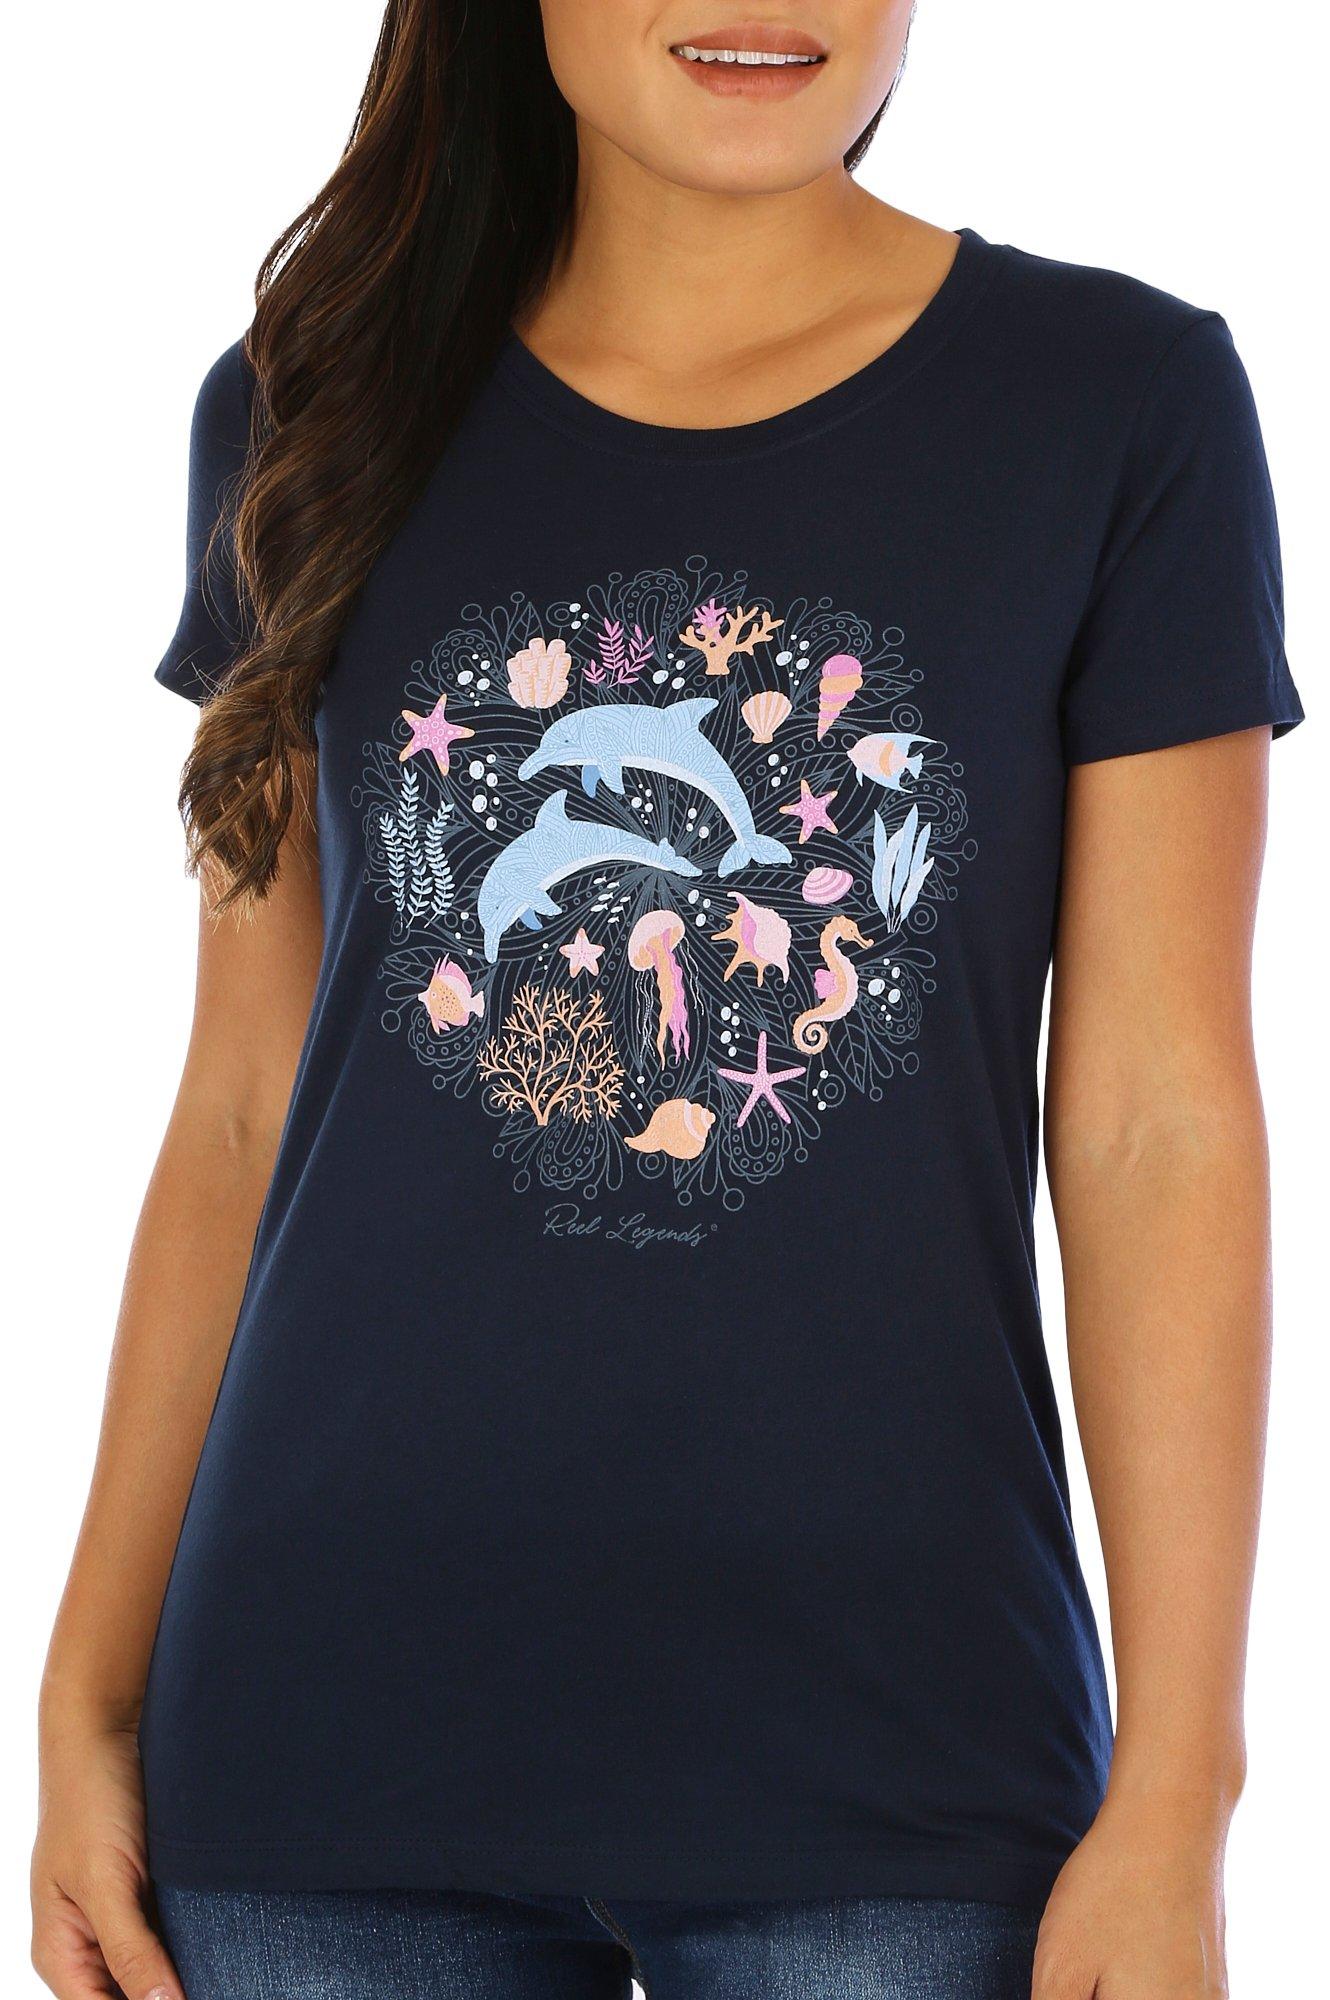 Womens Sea Critter T-Shirt